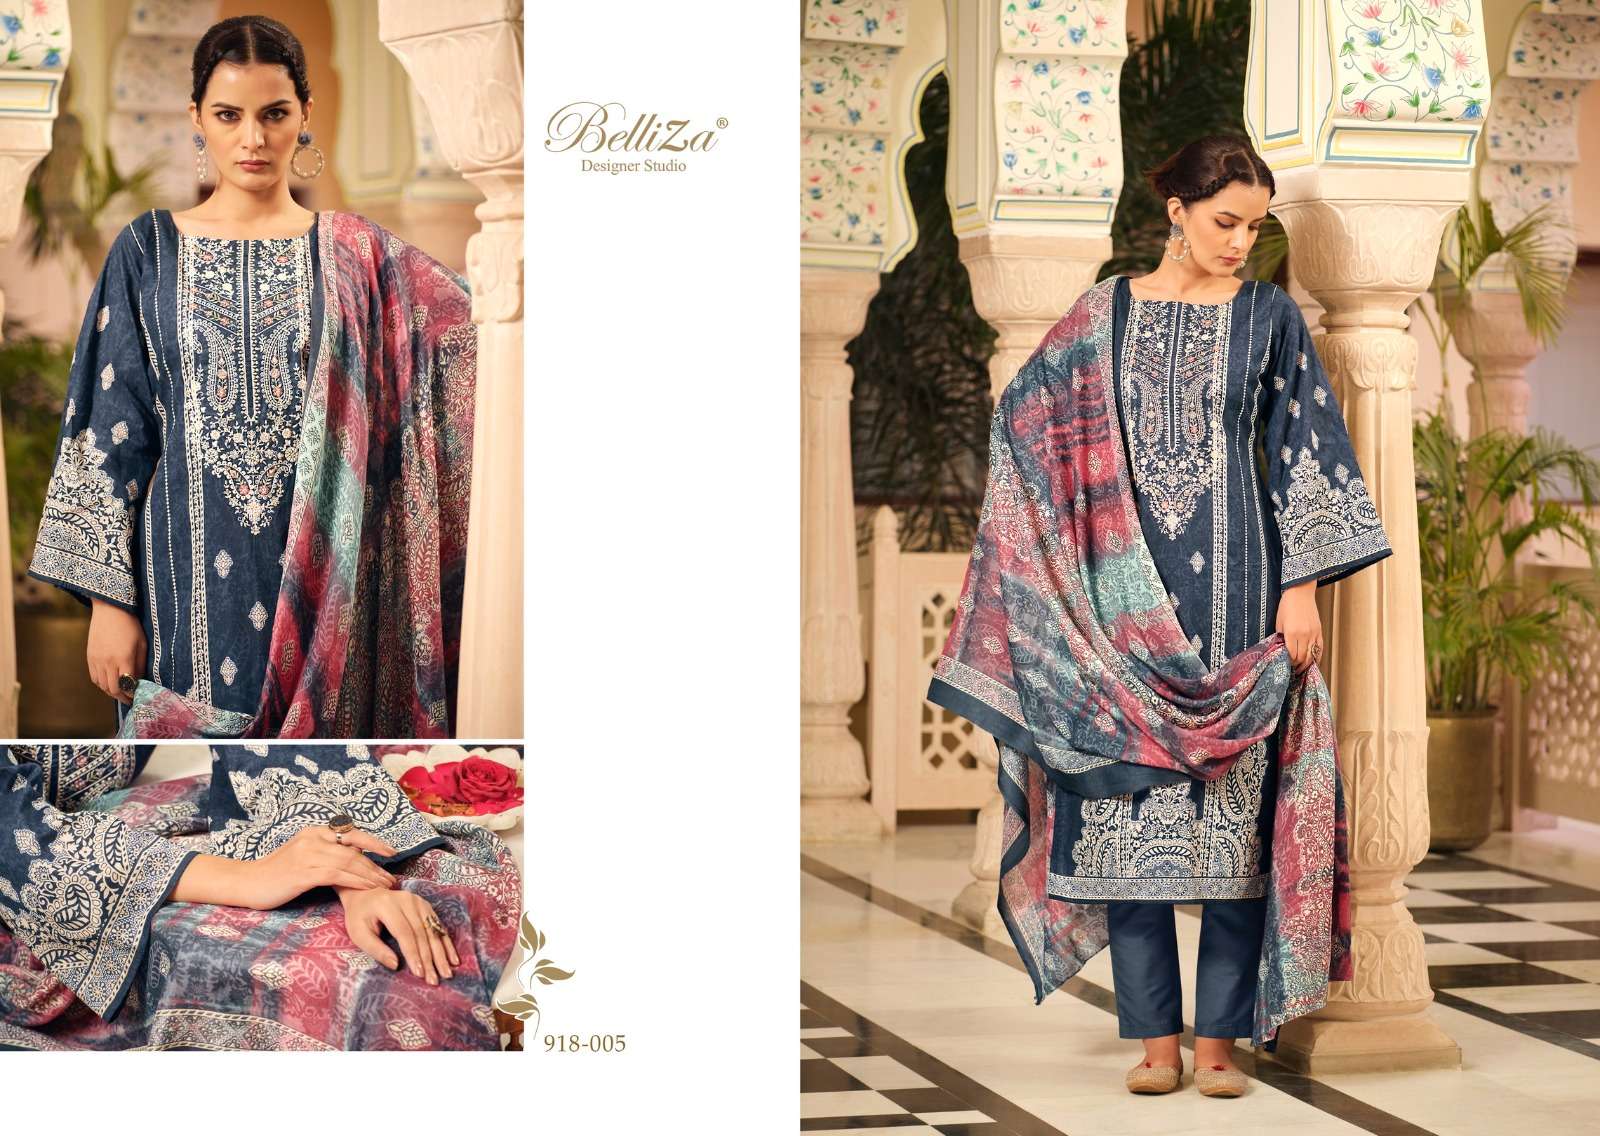 Belliza Naira Vol 51 Cotton Digital Printed Dress Material Wholesale catalog